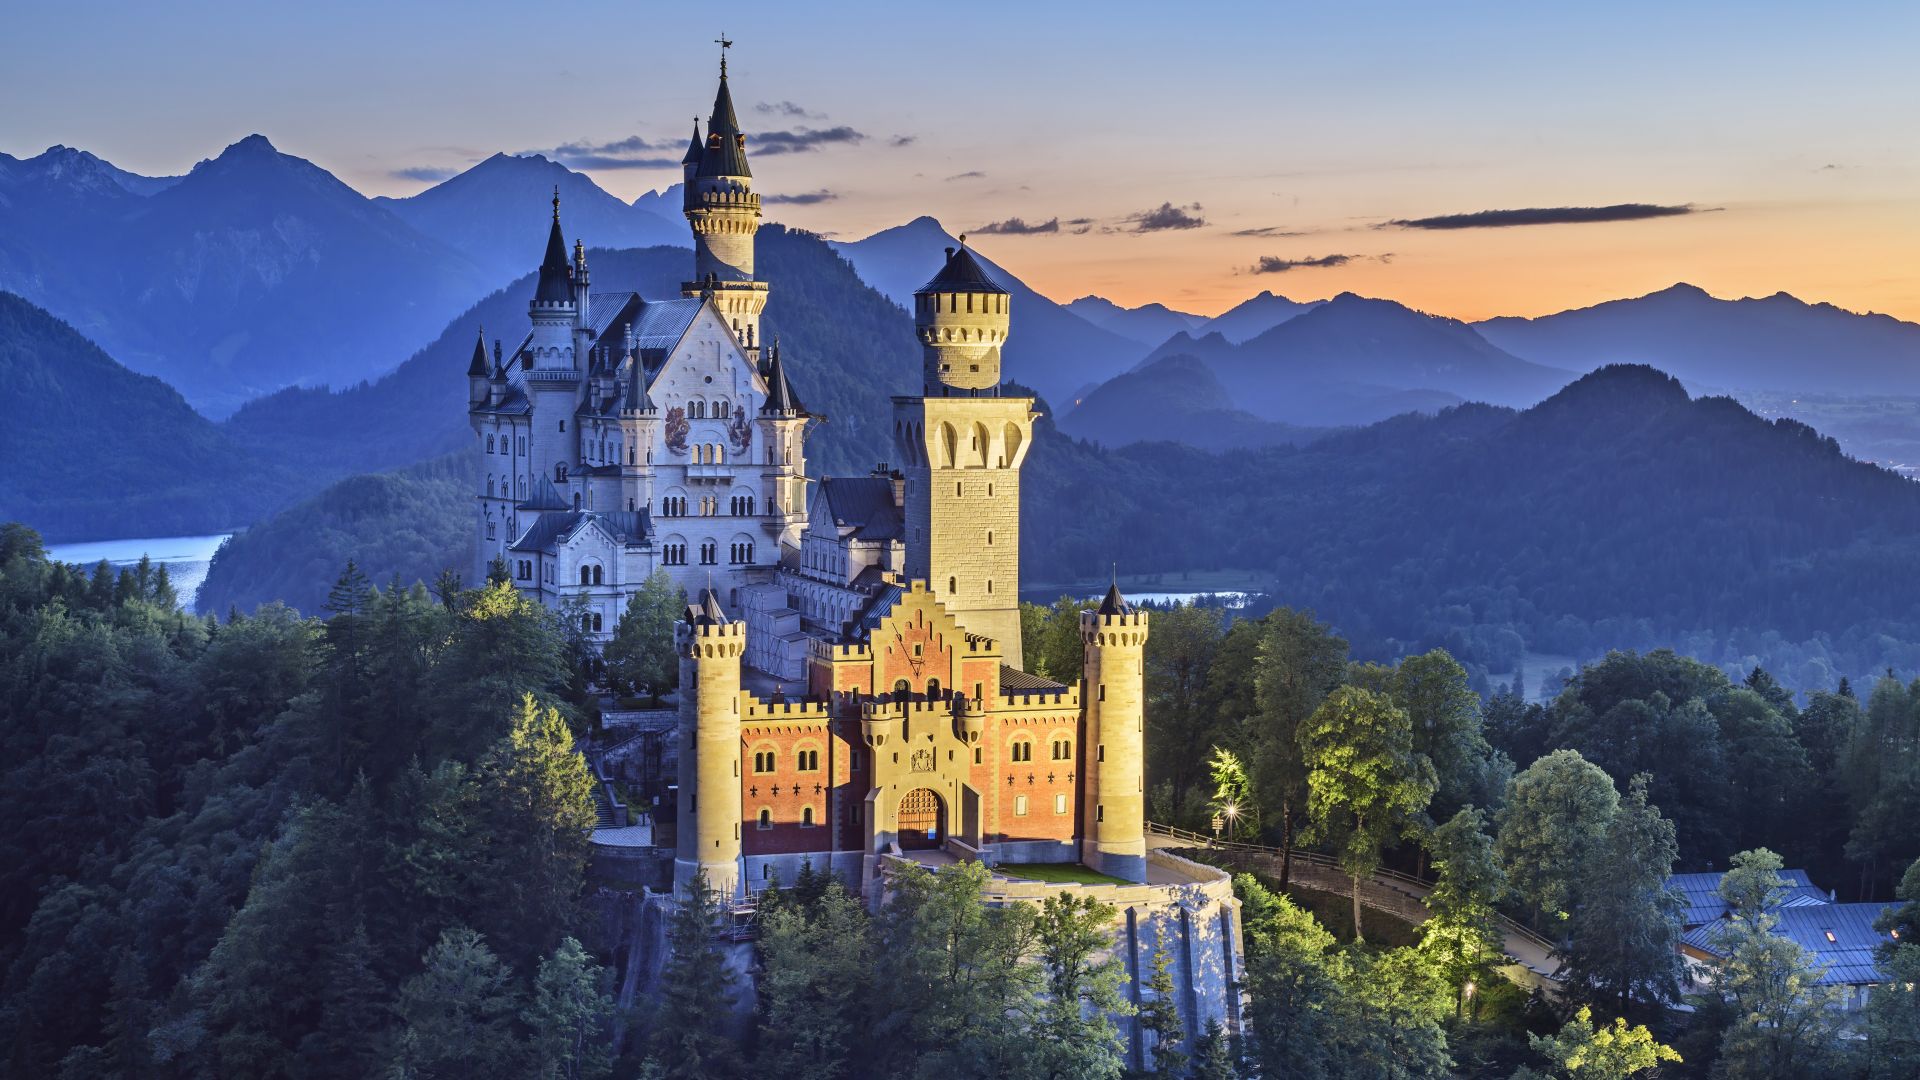 Schwangau: Schloss Neuschwanstein in der Abenddämmerung beleuchtet vor Tannheimer Bergen, Ammergauer Alpen